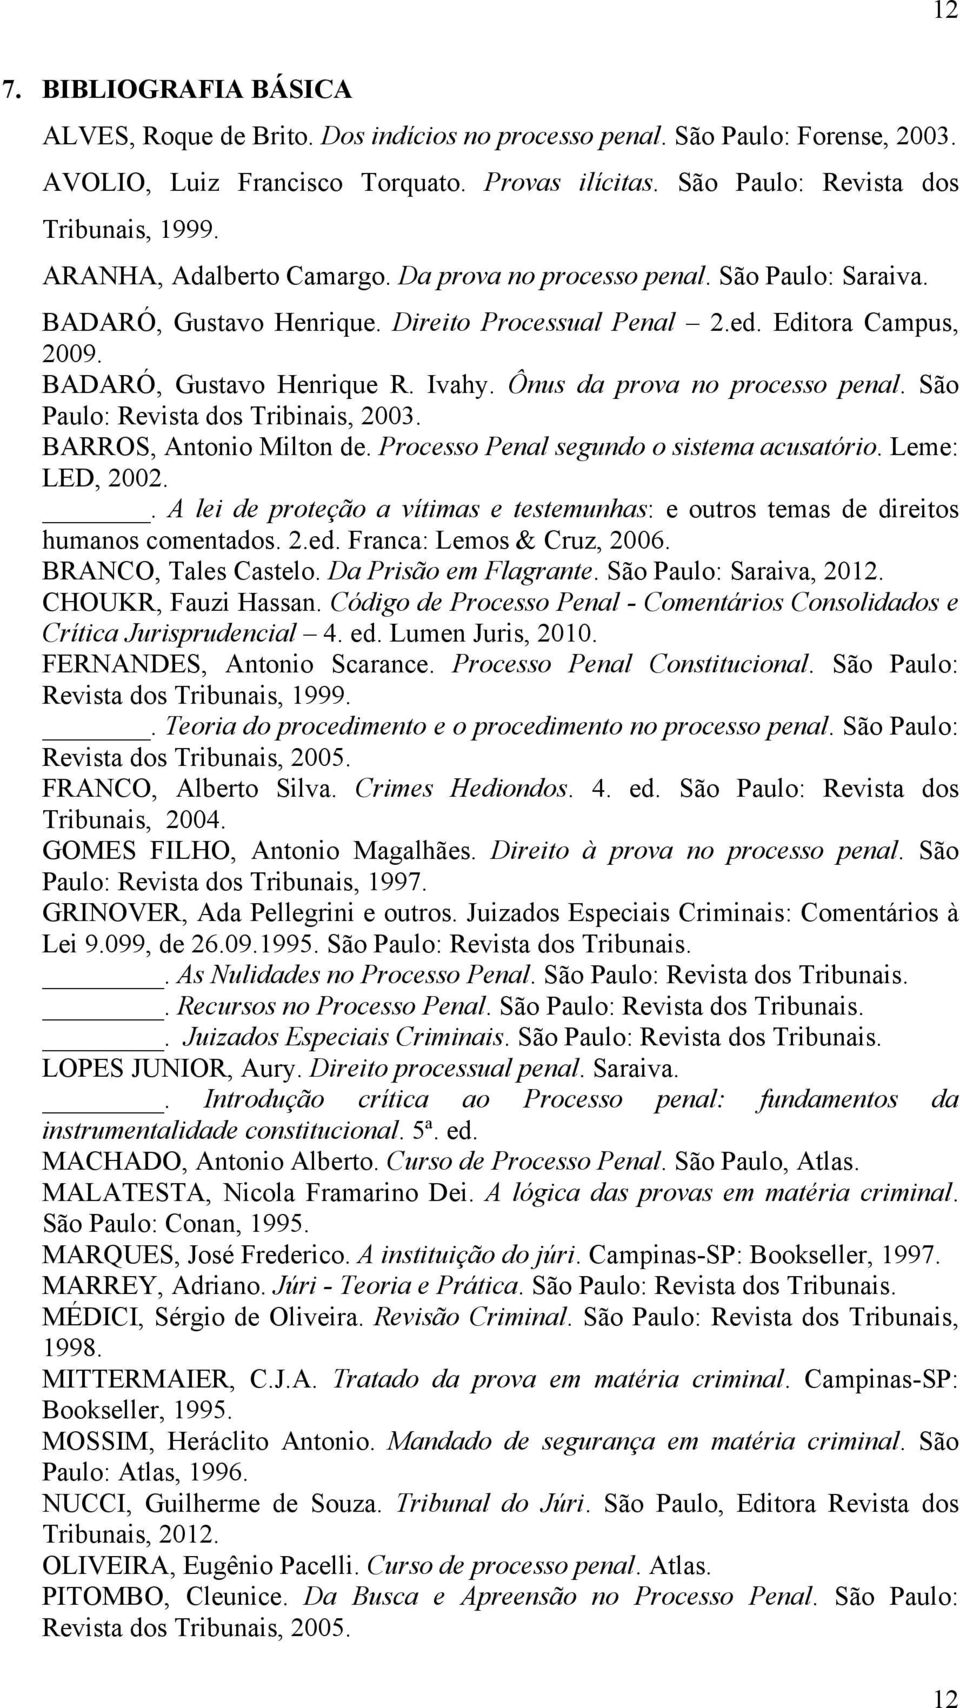 Ônus da prova no processo penal. São Paulo: Revista dos Tribinais, 2003. BARROS, Antonio Milton de. Processo Penal segundo o sistema acusatório. Leme: LED, 2002.